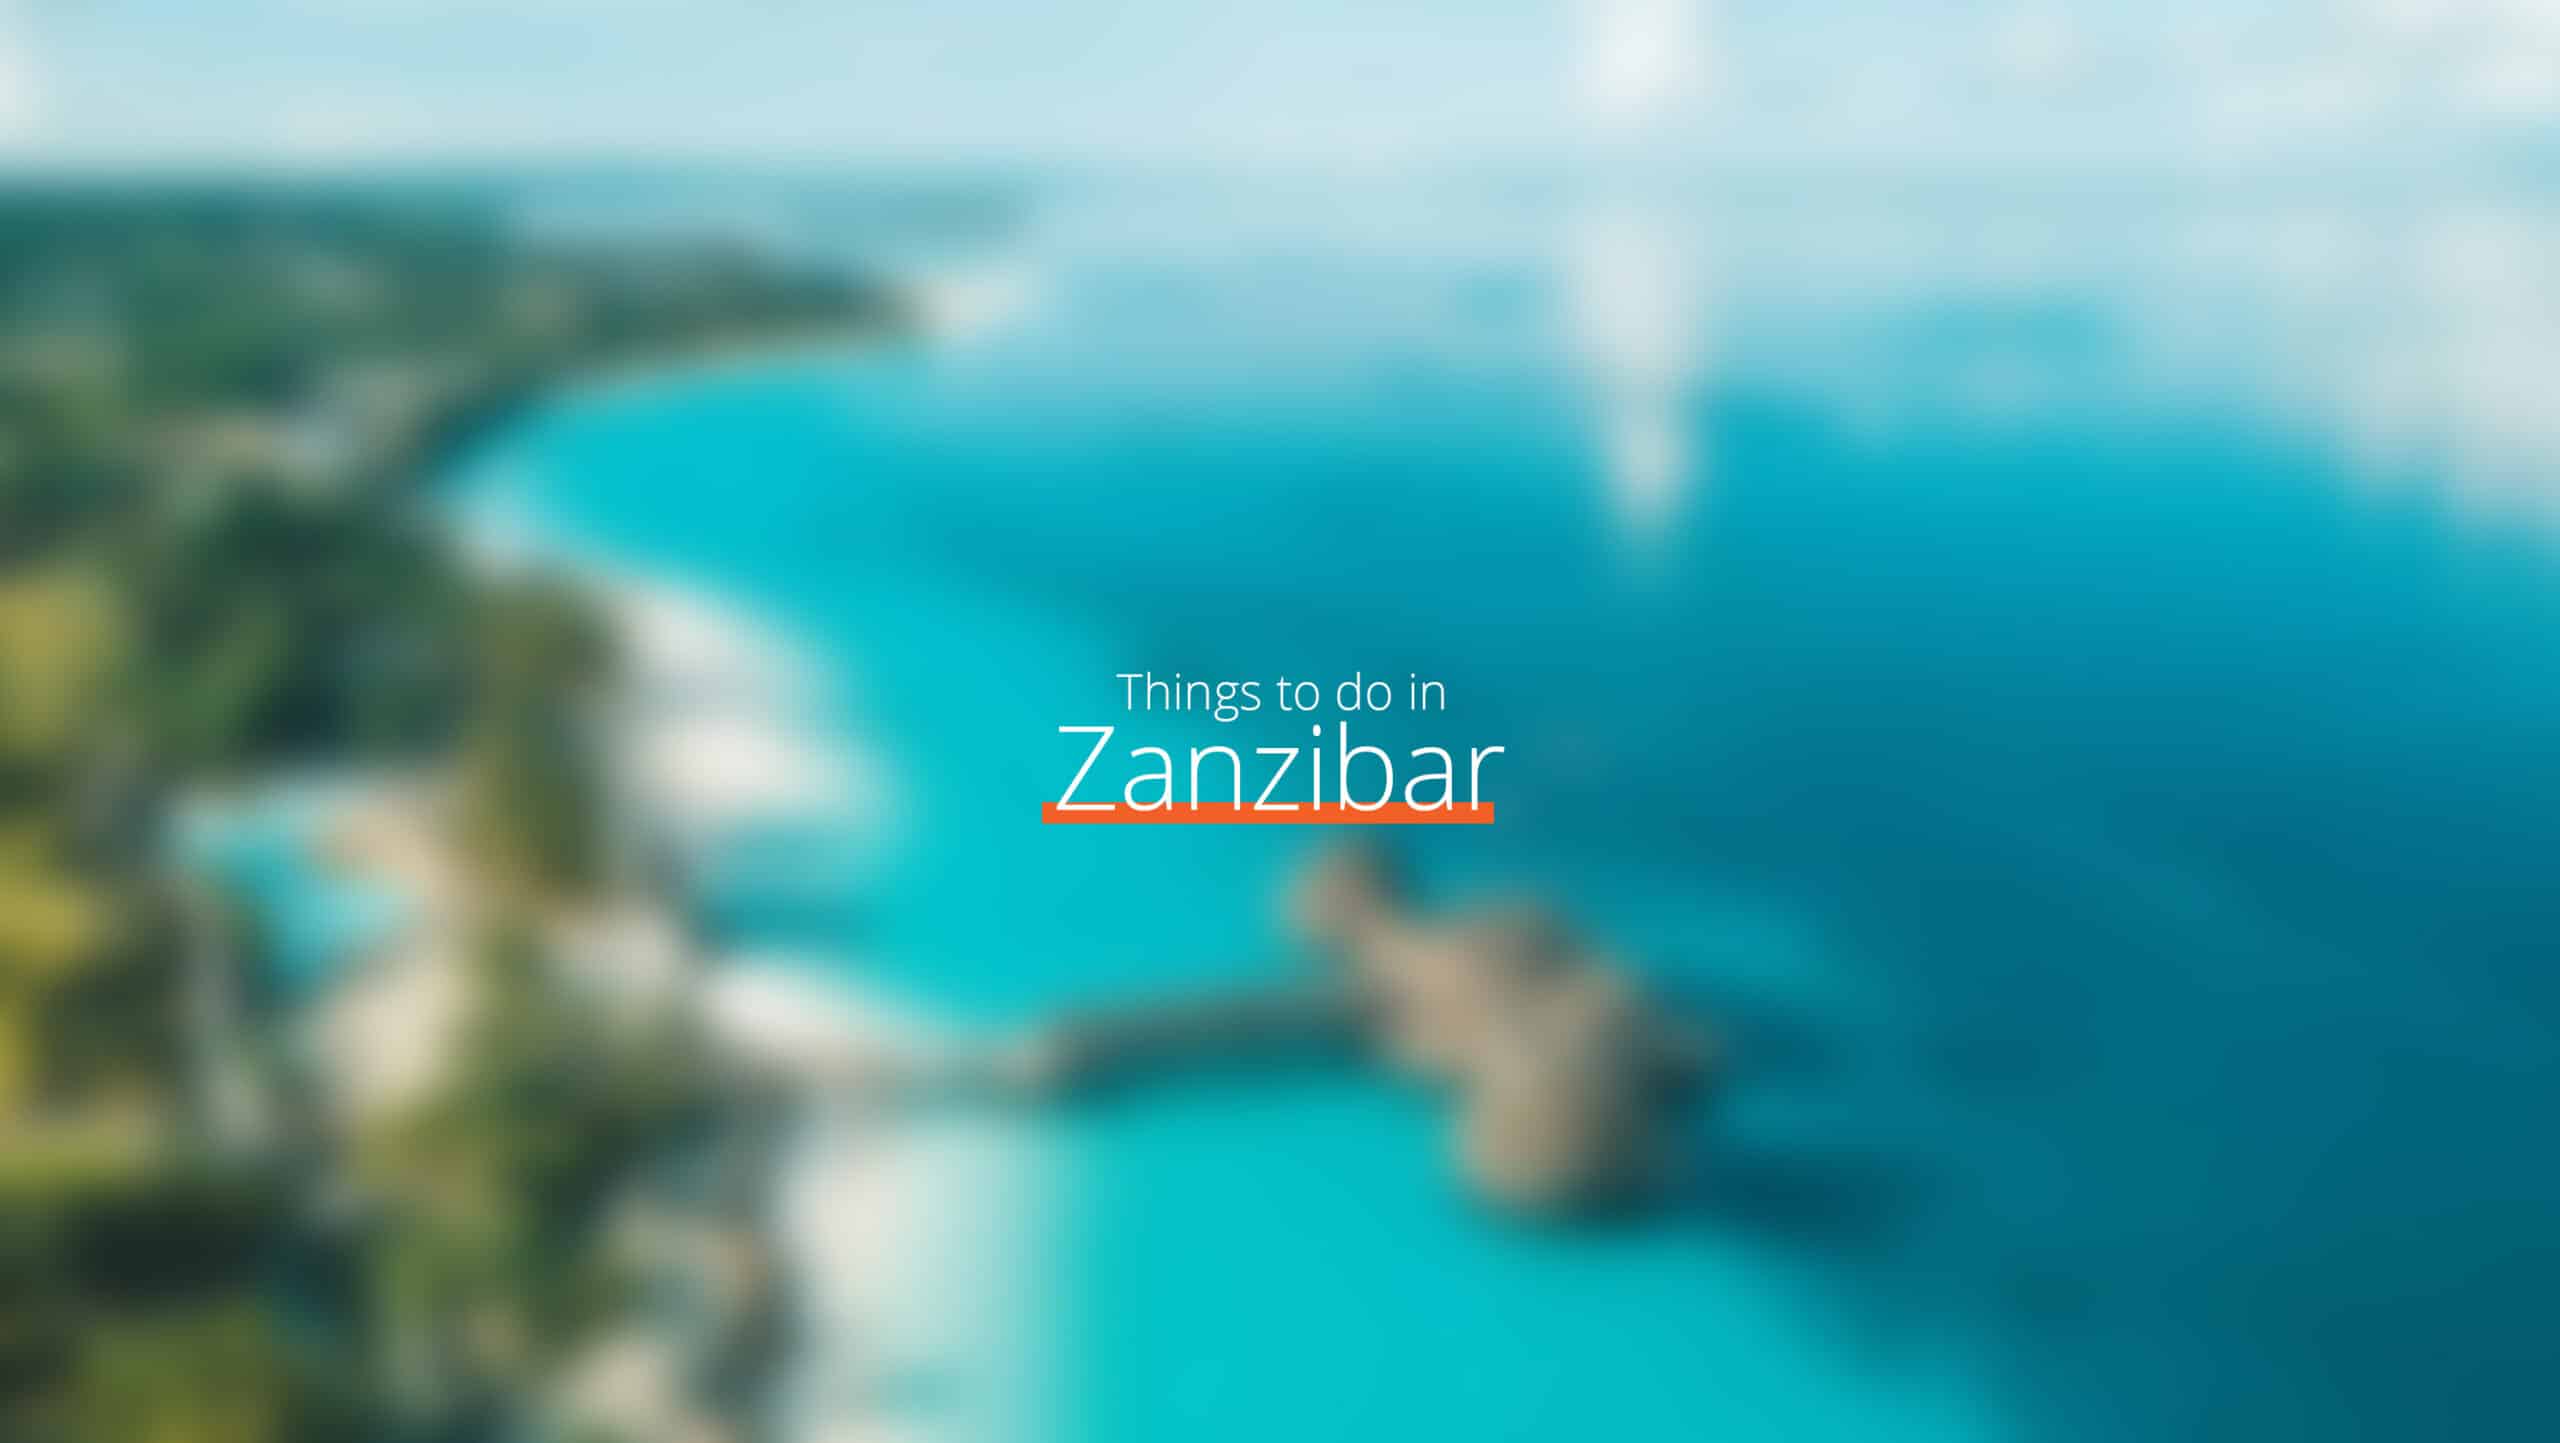 Tanzania - Zanzibar-skala - lokala lagar och seder